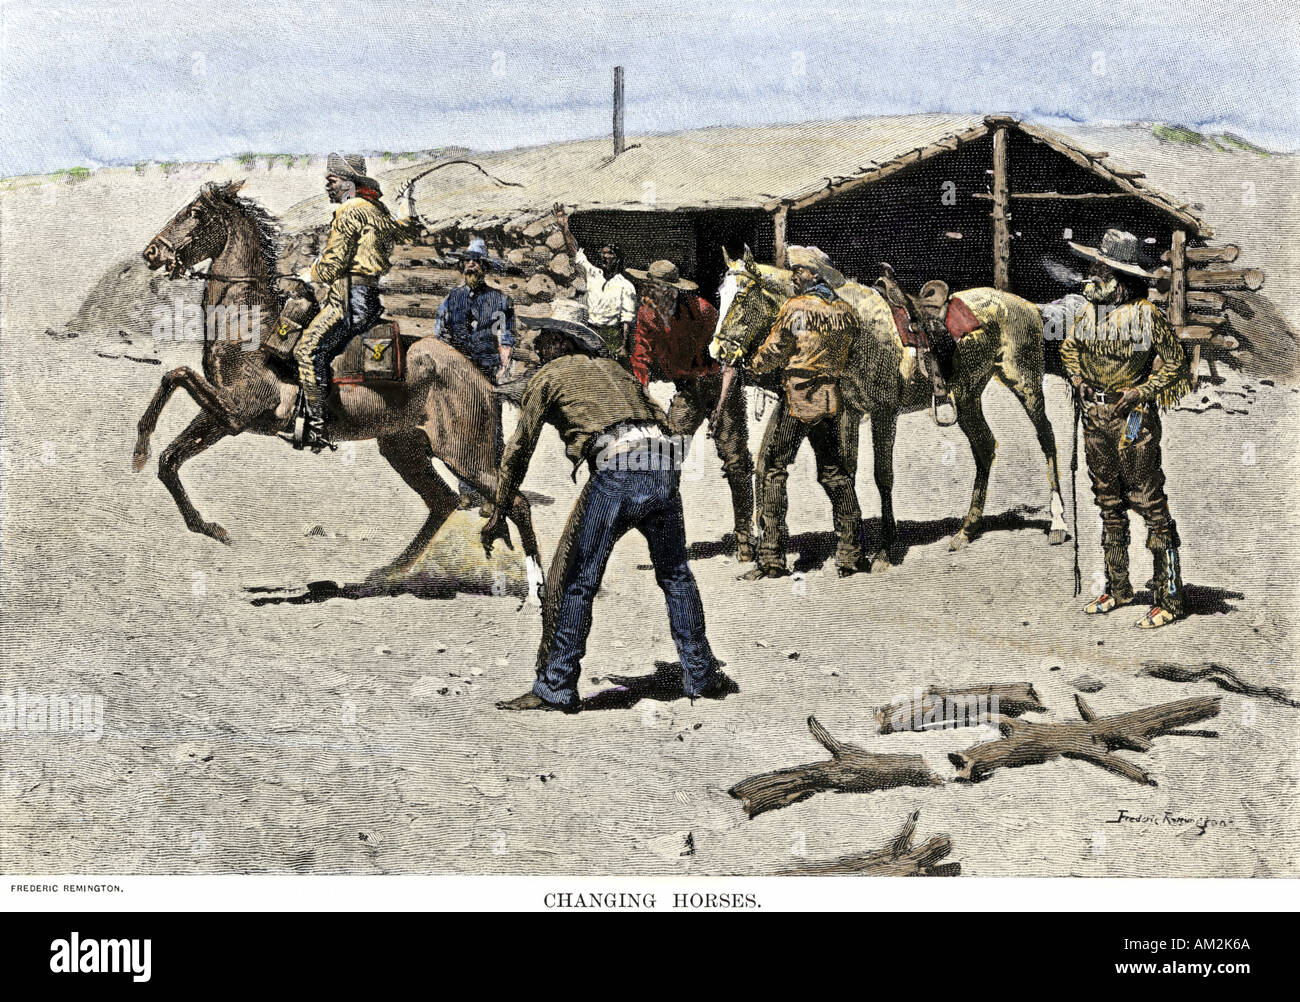 Pony Express rider l'évolution des chevaux. À la main, gravure sur bois, d'une illustration Frederic Remington Banque D'Images